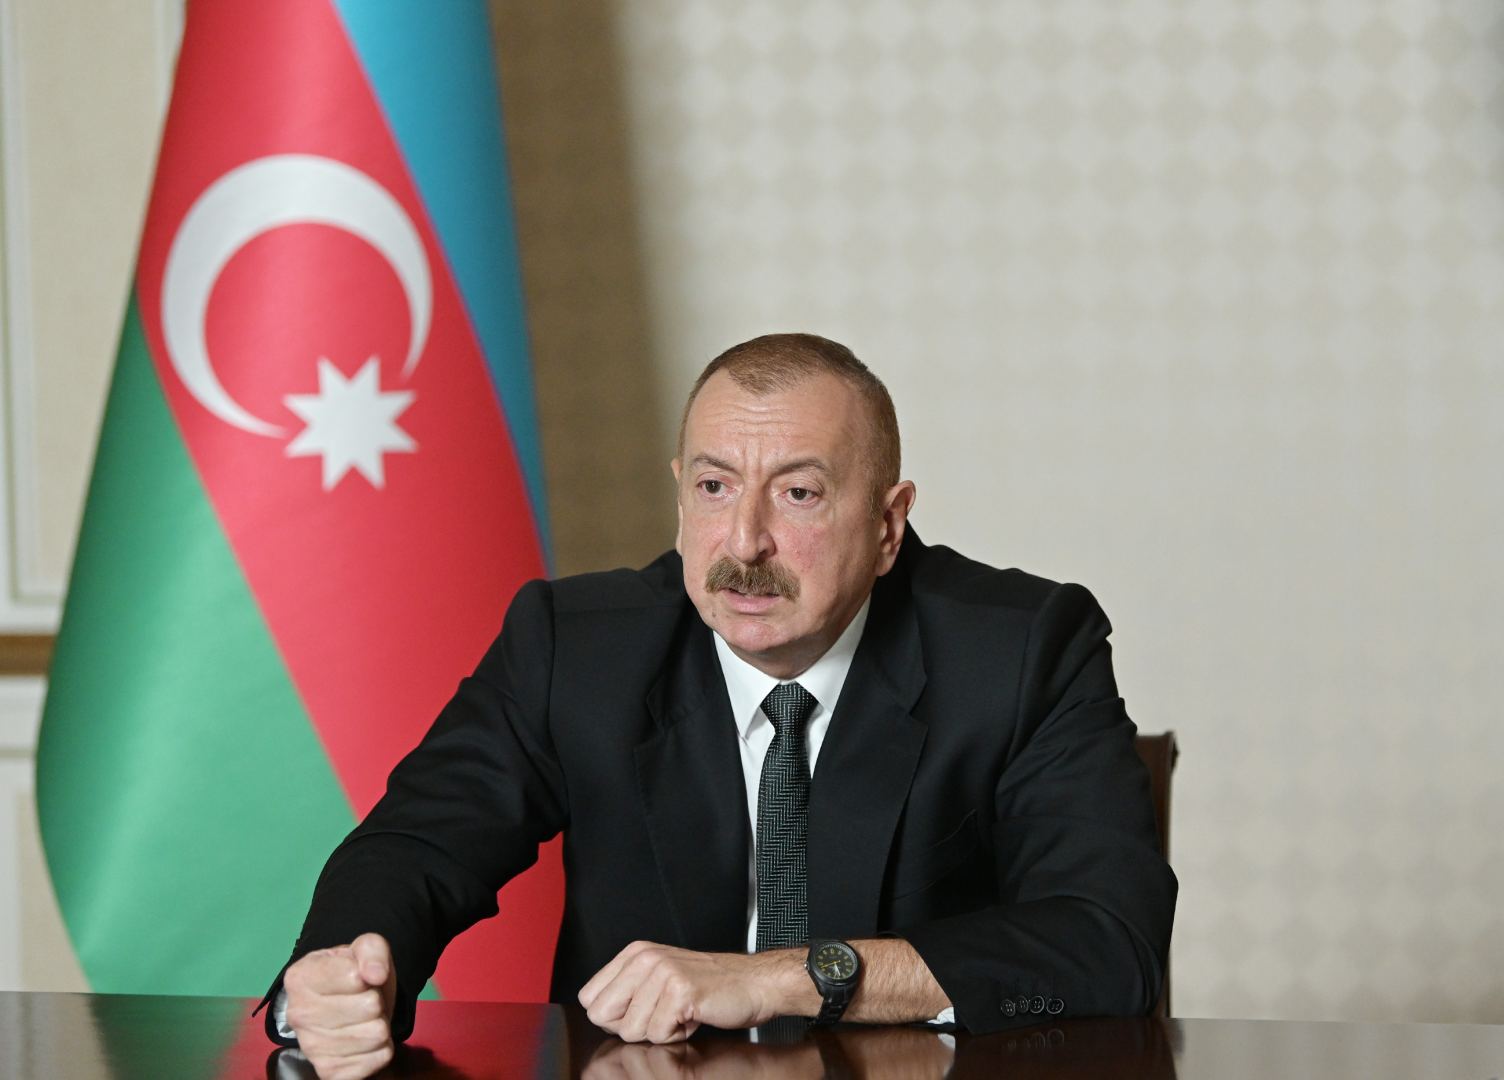 Azərbaycan Prezidenti: Kiminsə xoşuna gəlmək naminə öz sözünü deməkdən çəkinən diplomatiya olmamalıdır